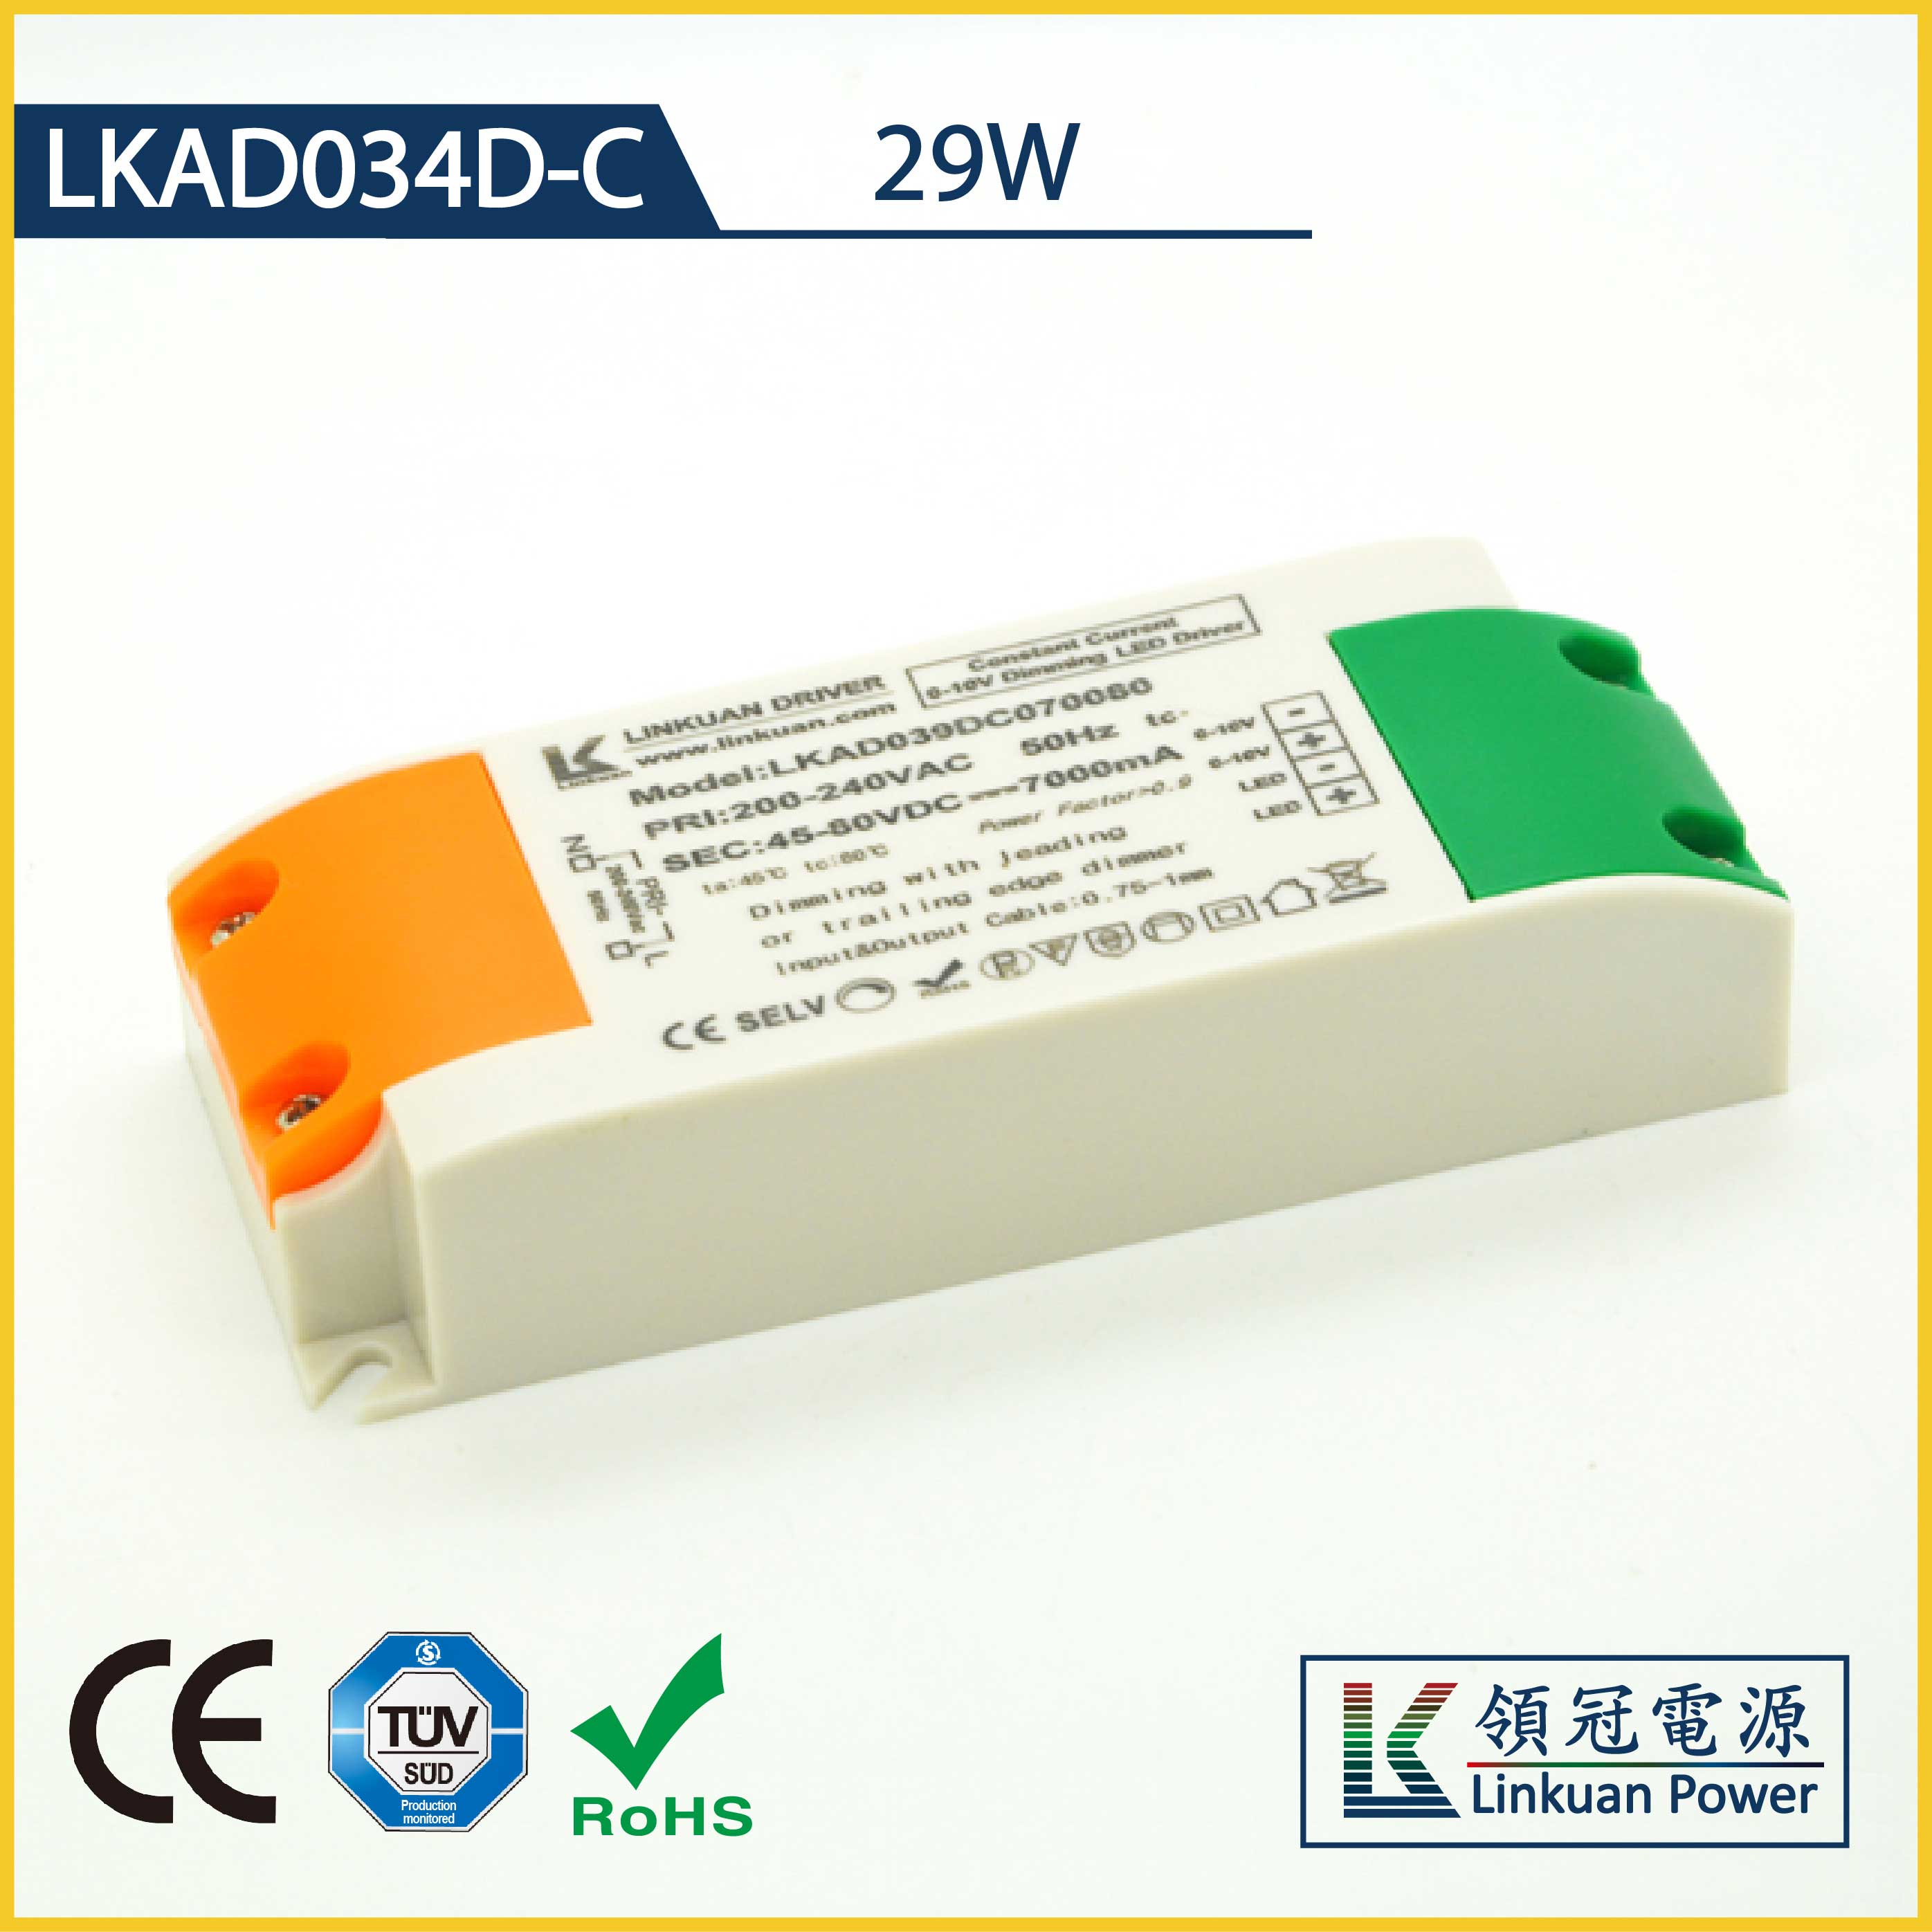 LKAD034D-C 29W 2-42V 700mA 0-10V Dimming LED drivers